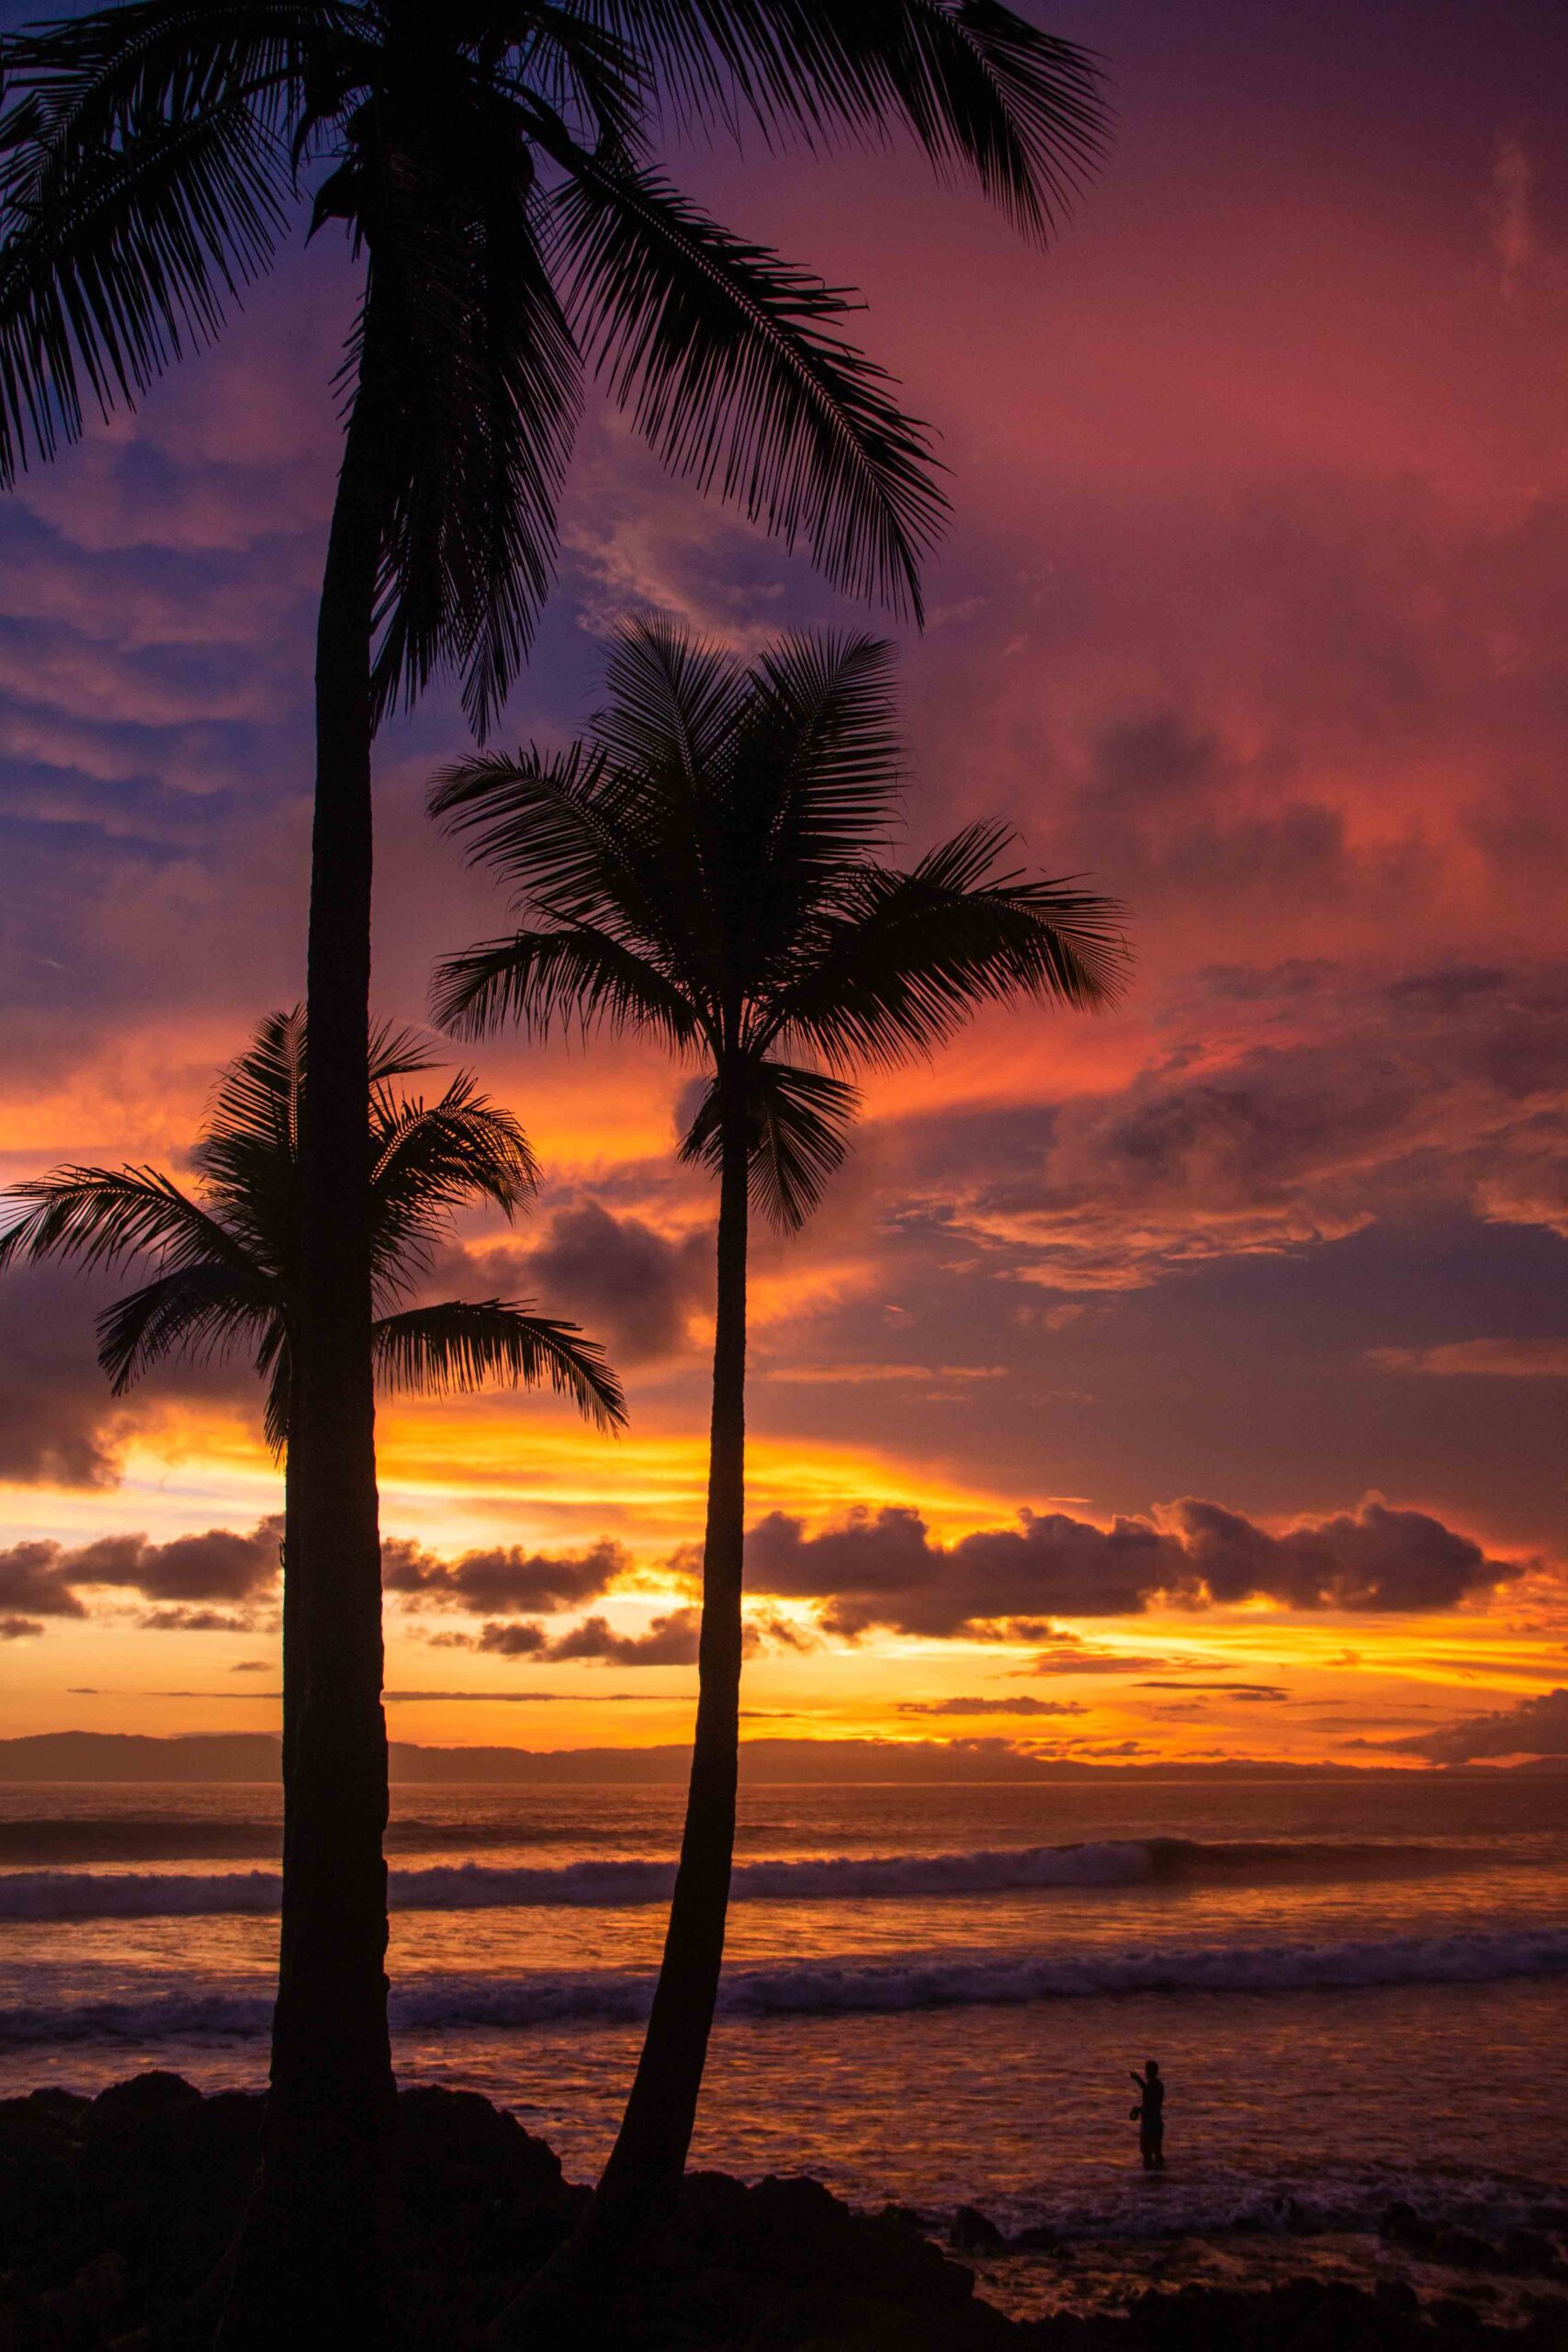 Sunset at Pavones beach in Costa Rica